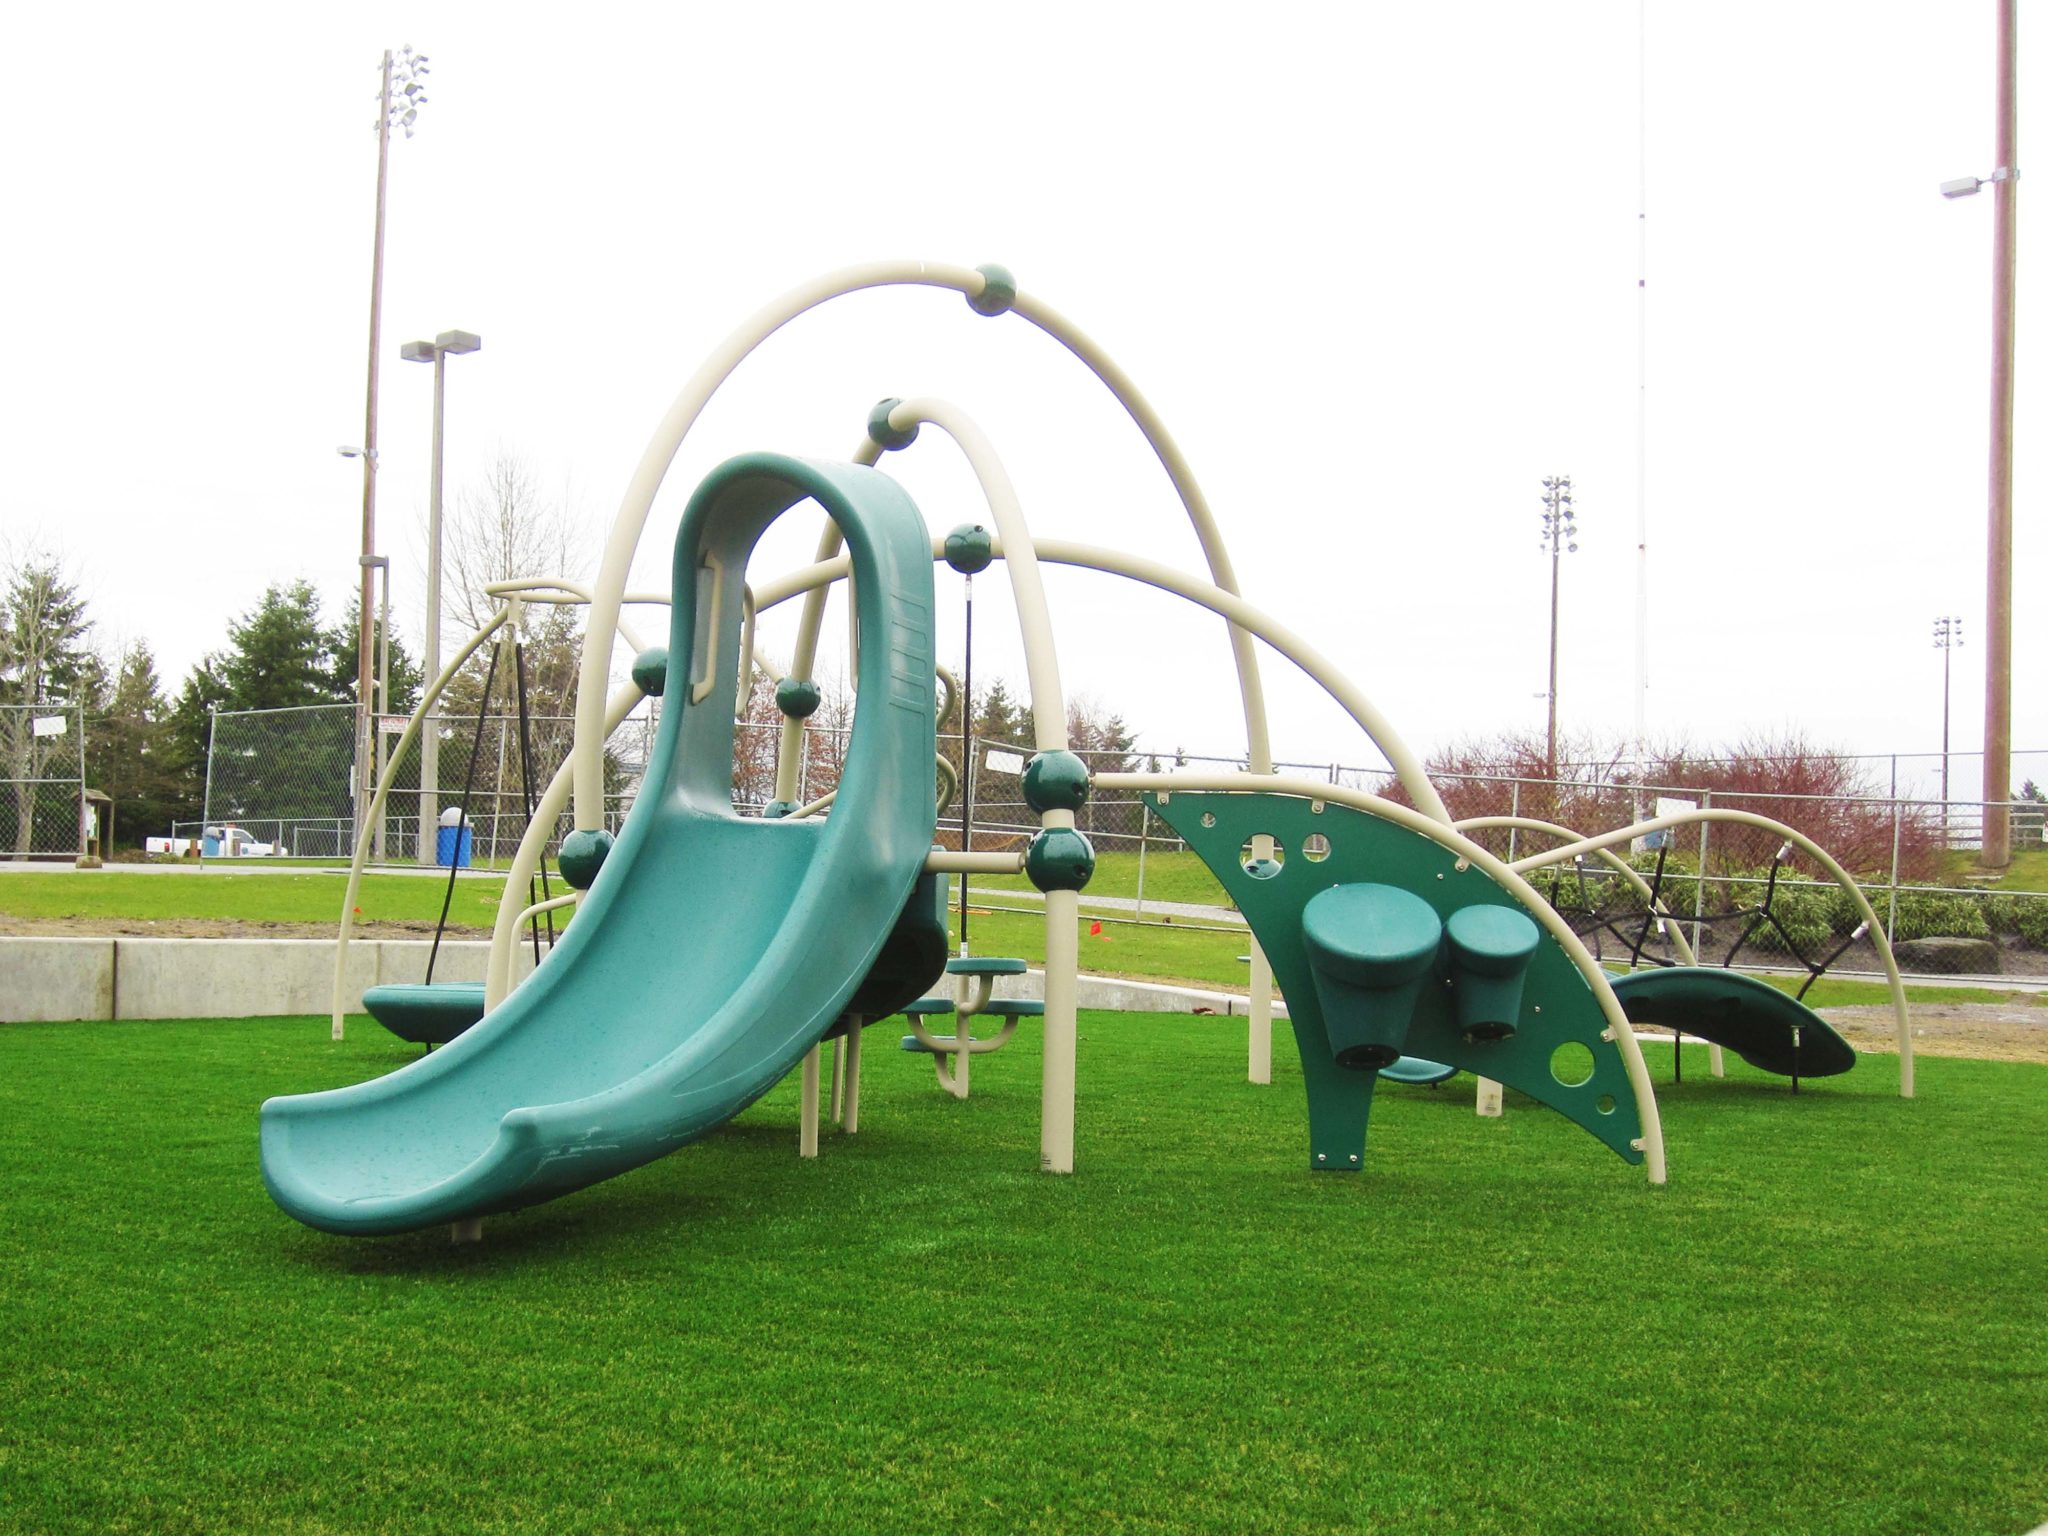 Kasch Park Weevos Playground Structure